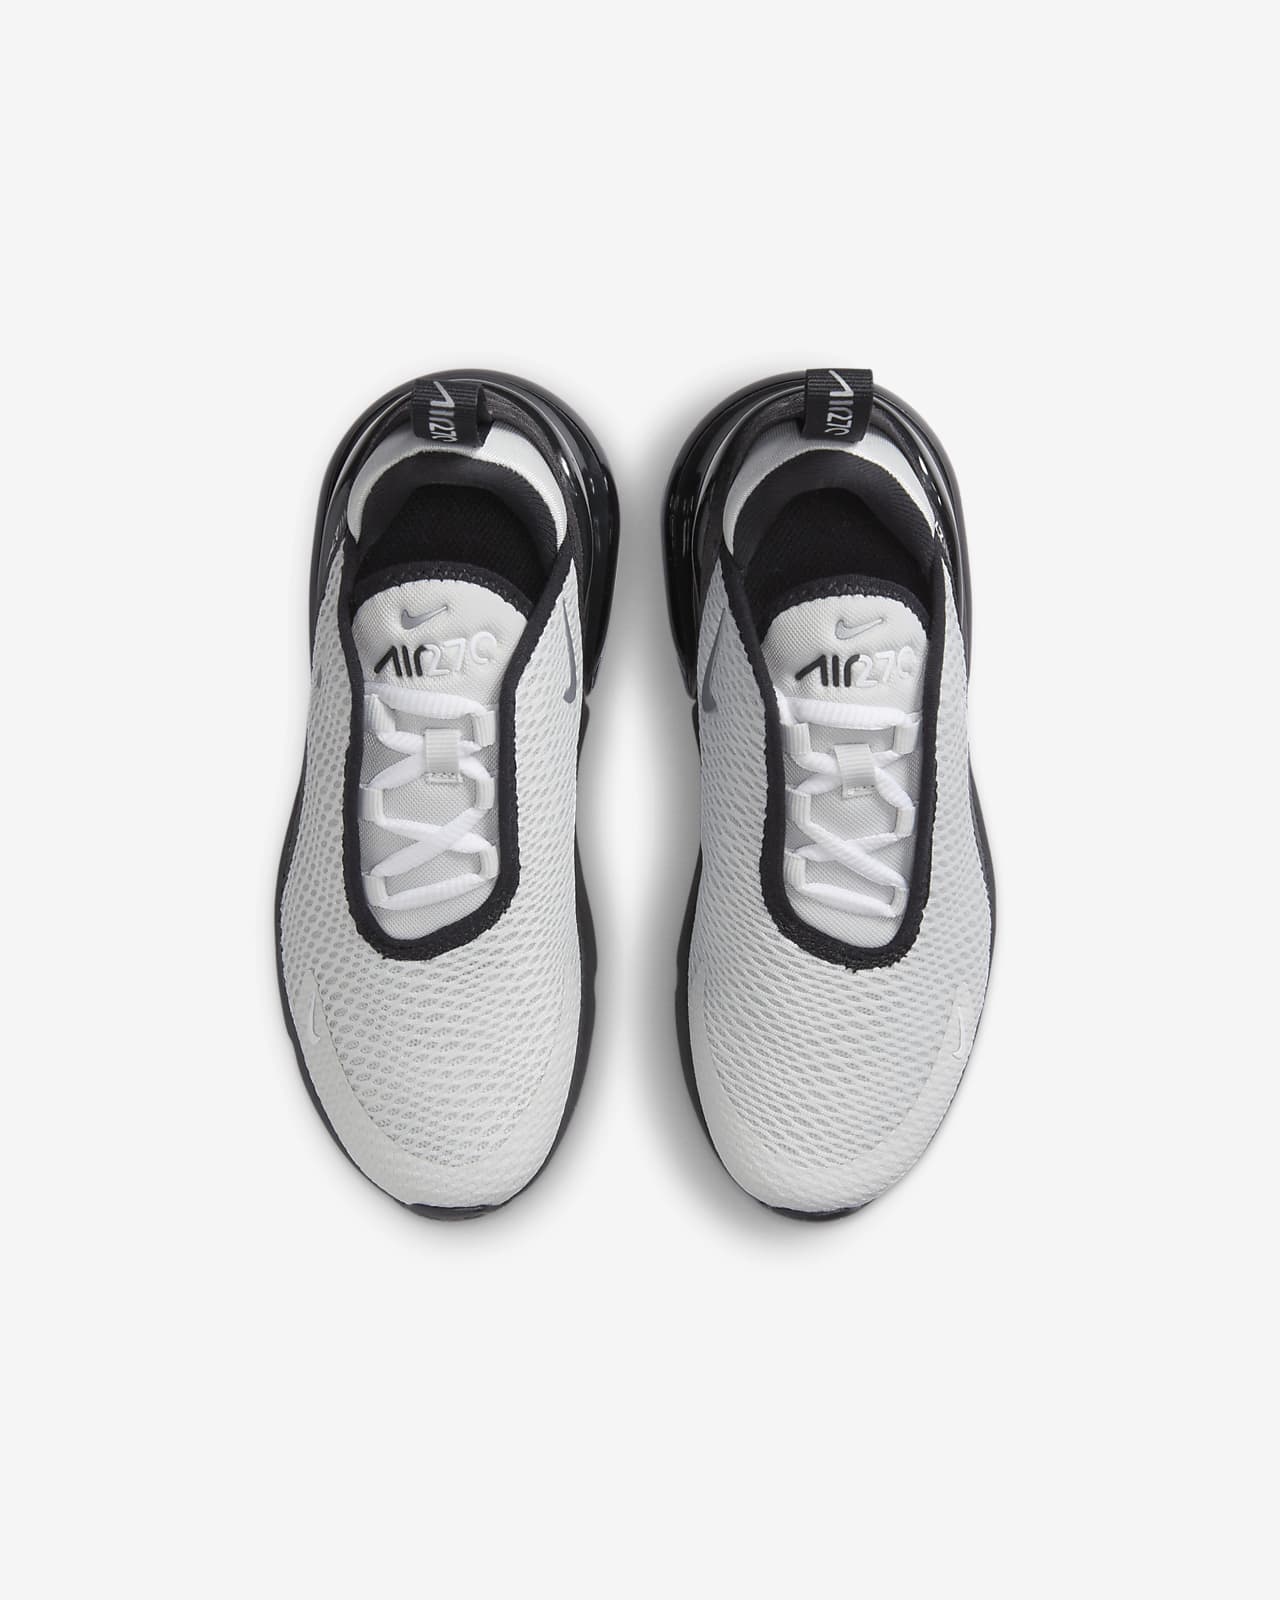 Baskets Nike Air Max 270 Grey/black PS